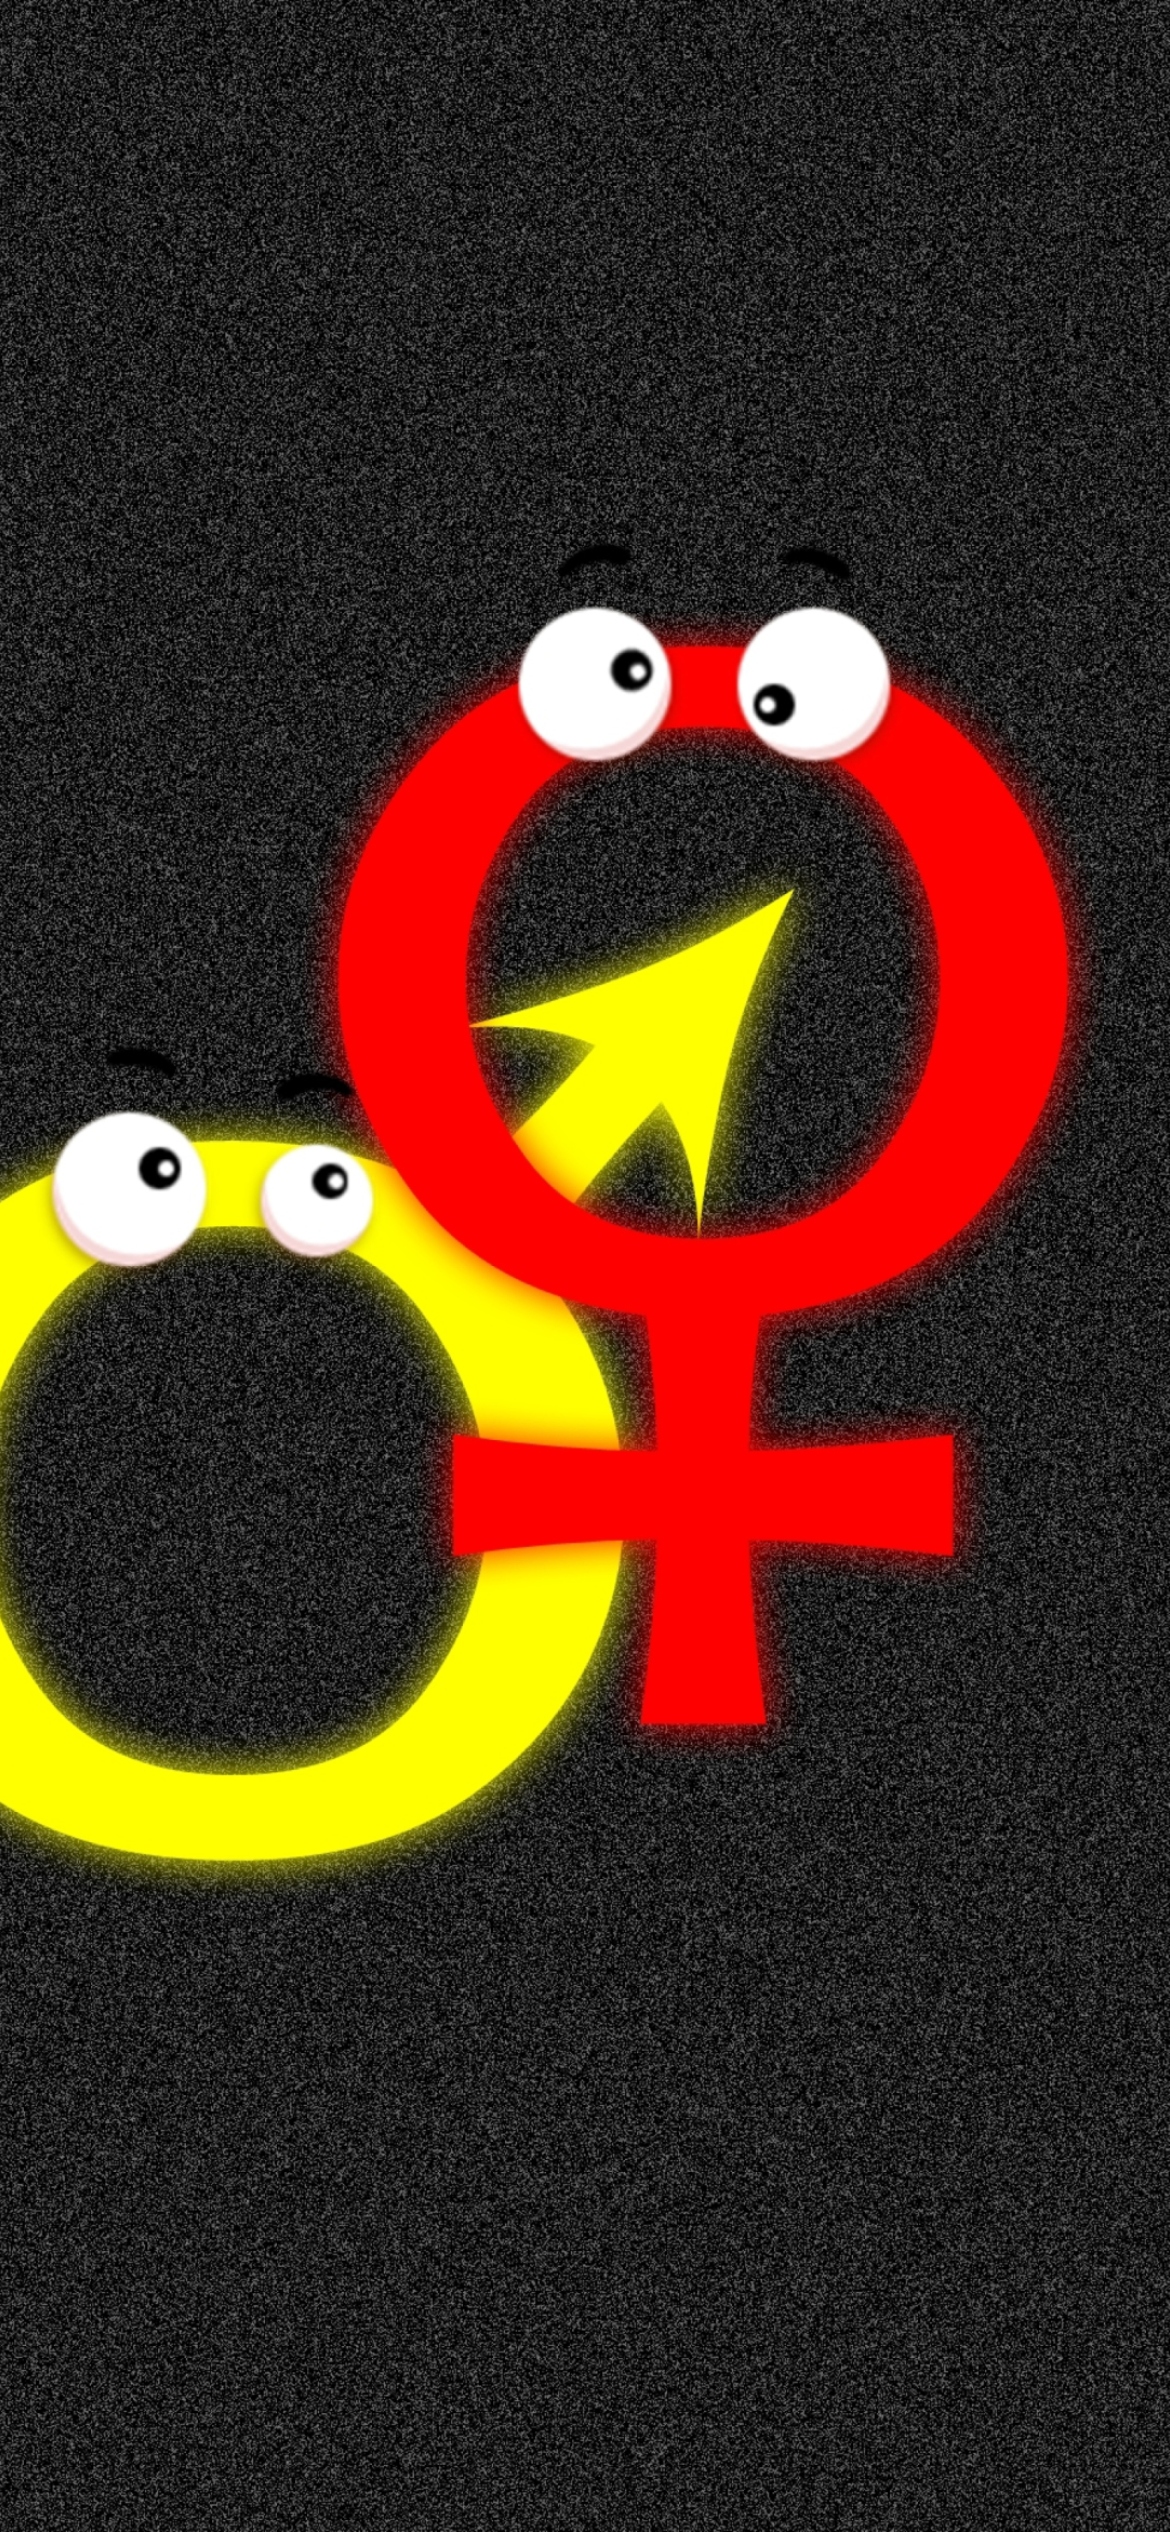 Sfondi Funny Gender Symbols 1170x2532